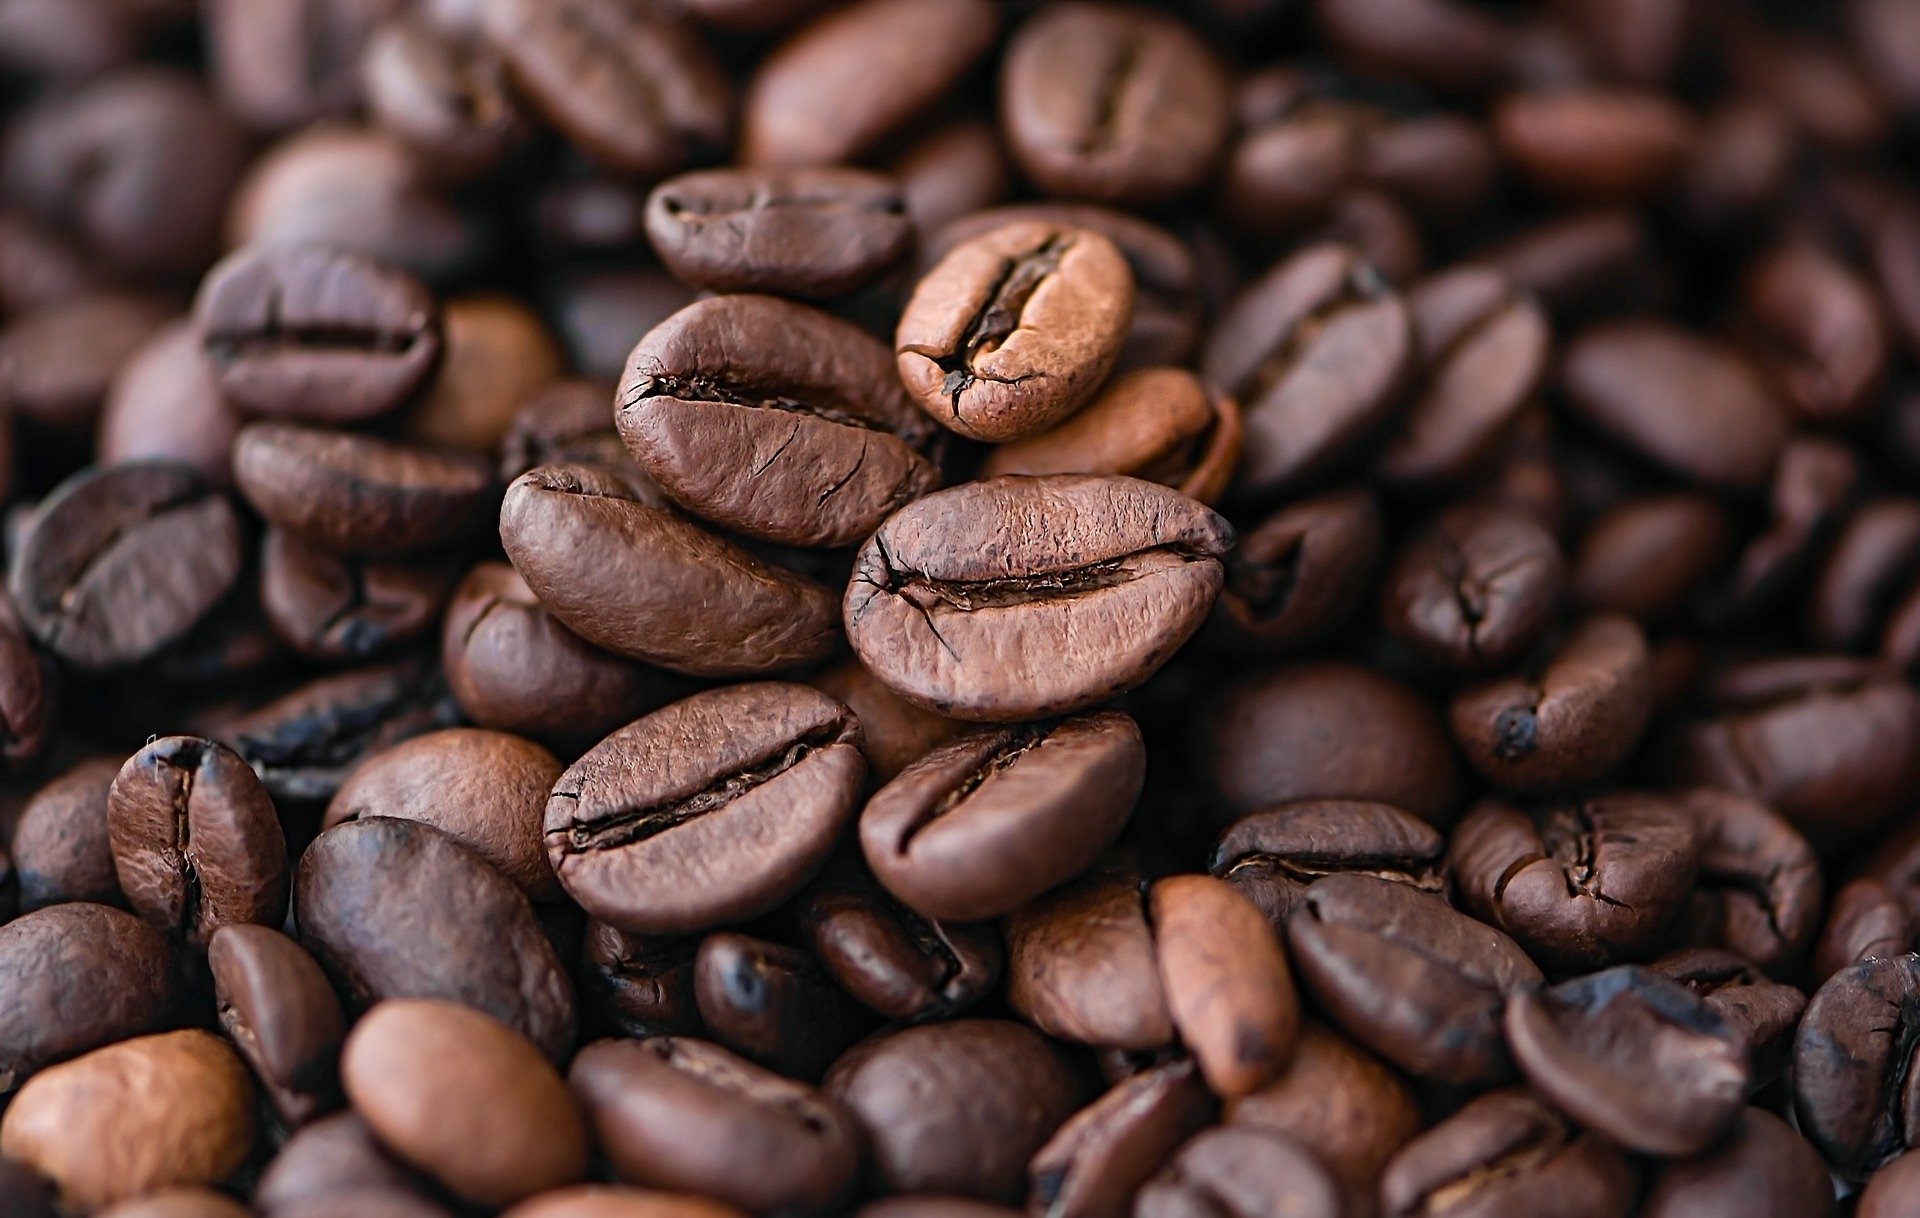 Финский производитель кофе Paulig сообщил о закрытии сделки по продаже бизнеса в России